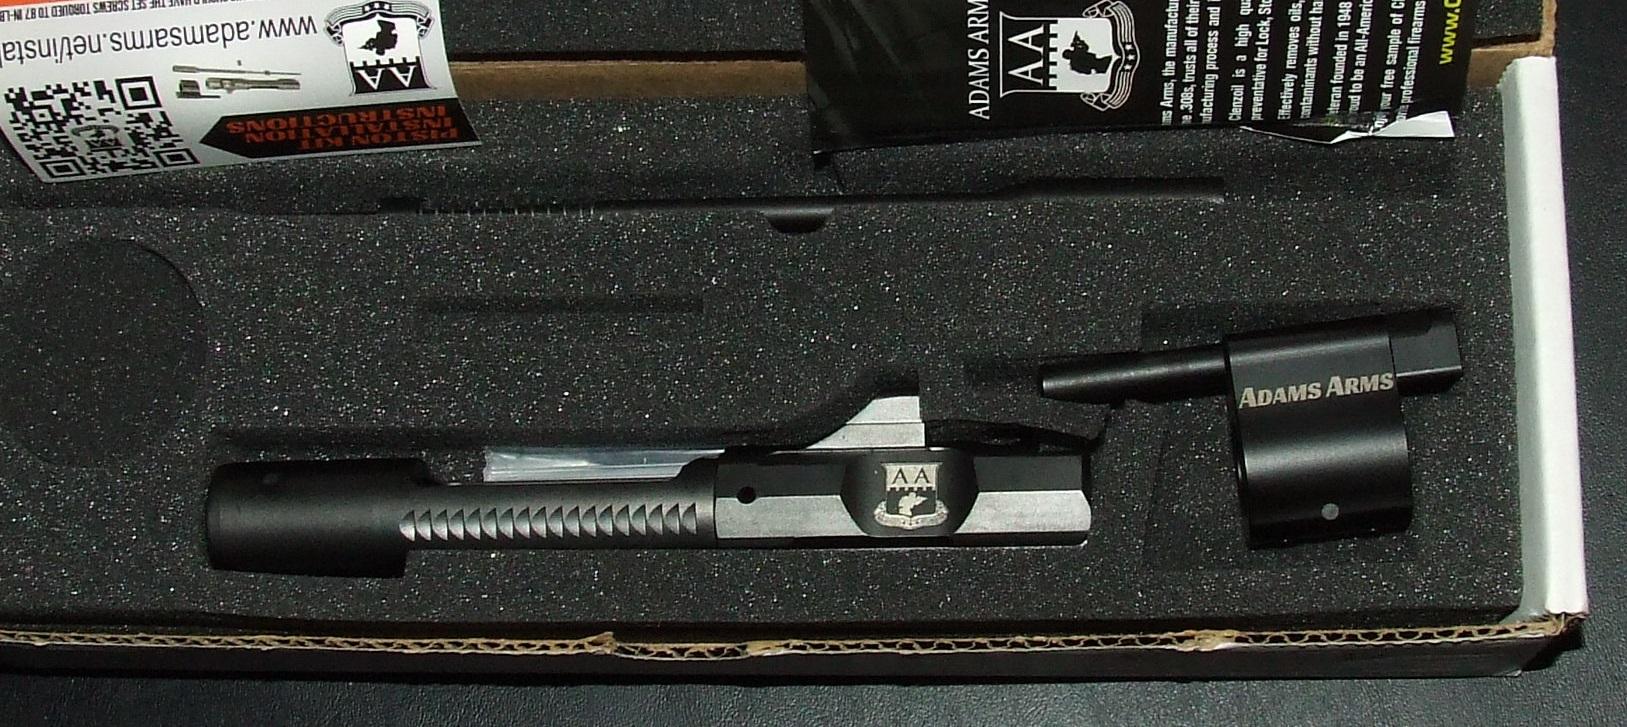 Adams Arms “P” Series Carbine Pistol Kit